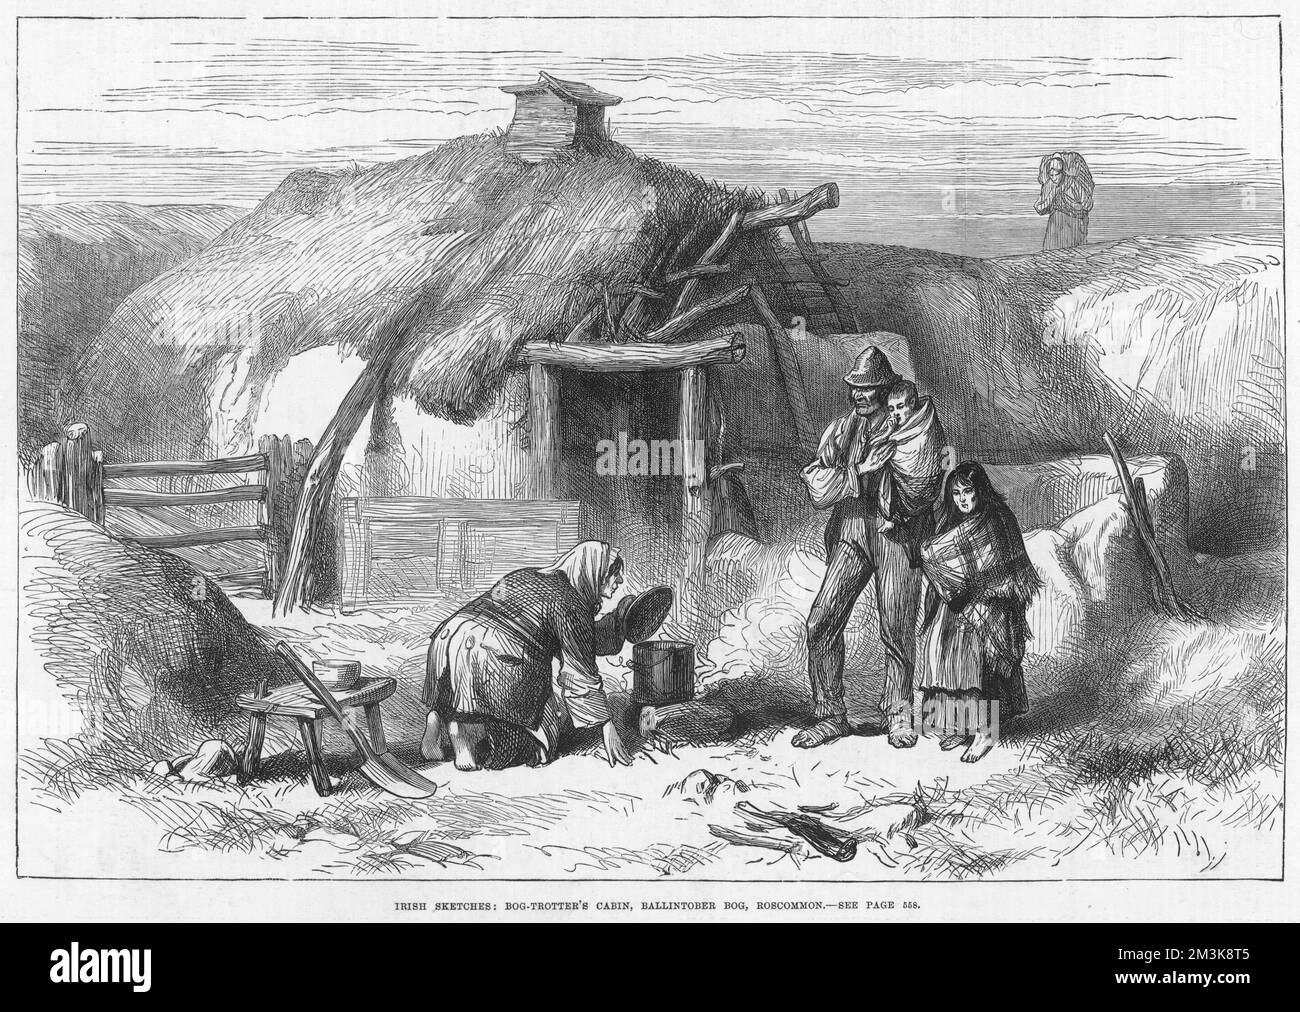 Uno schizzo irlandese raffigurante una cabina di cinghiale a Ballintober Bog a Roscommon in Irlanda. In lontananza, una donna sembra portare il suo carico di torba. Data: 13 dicembre 1879 Foto Stock